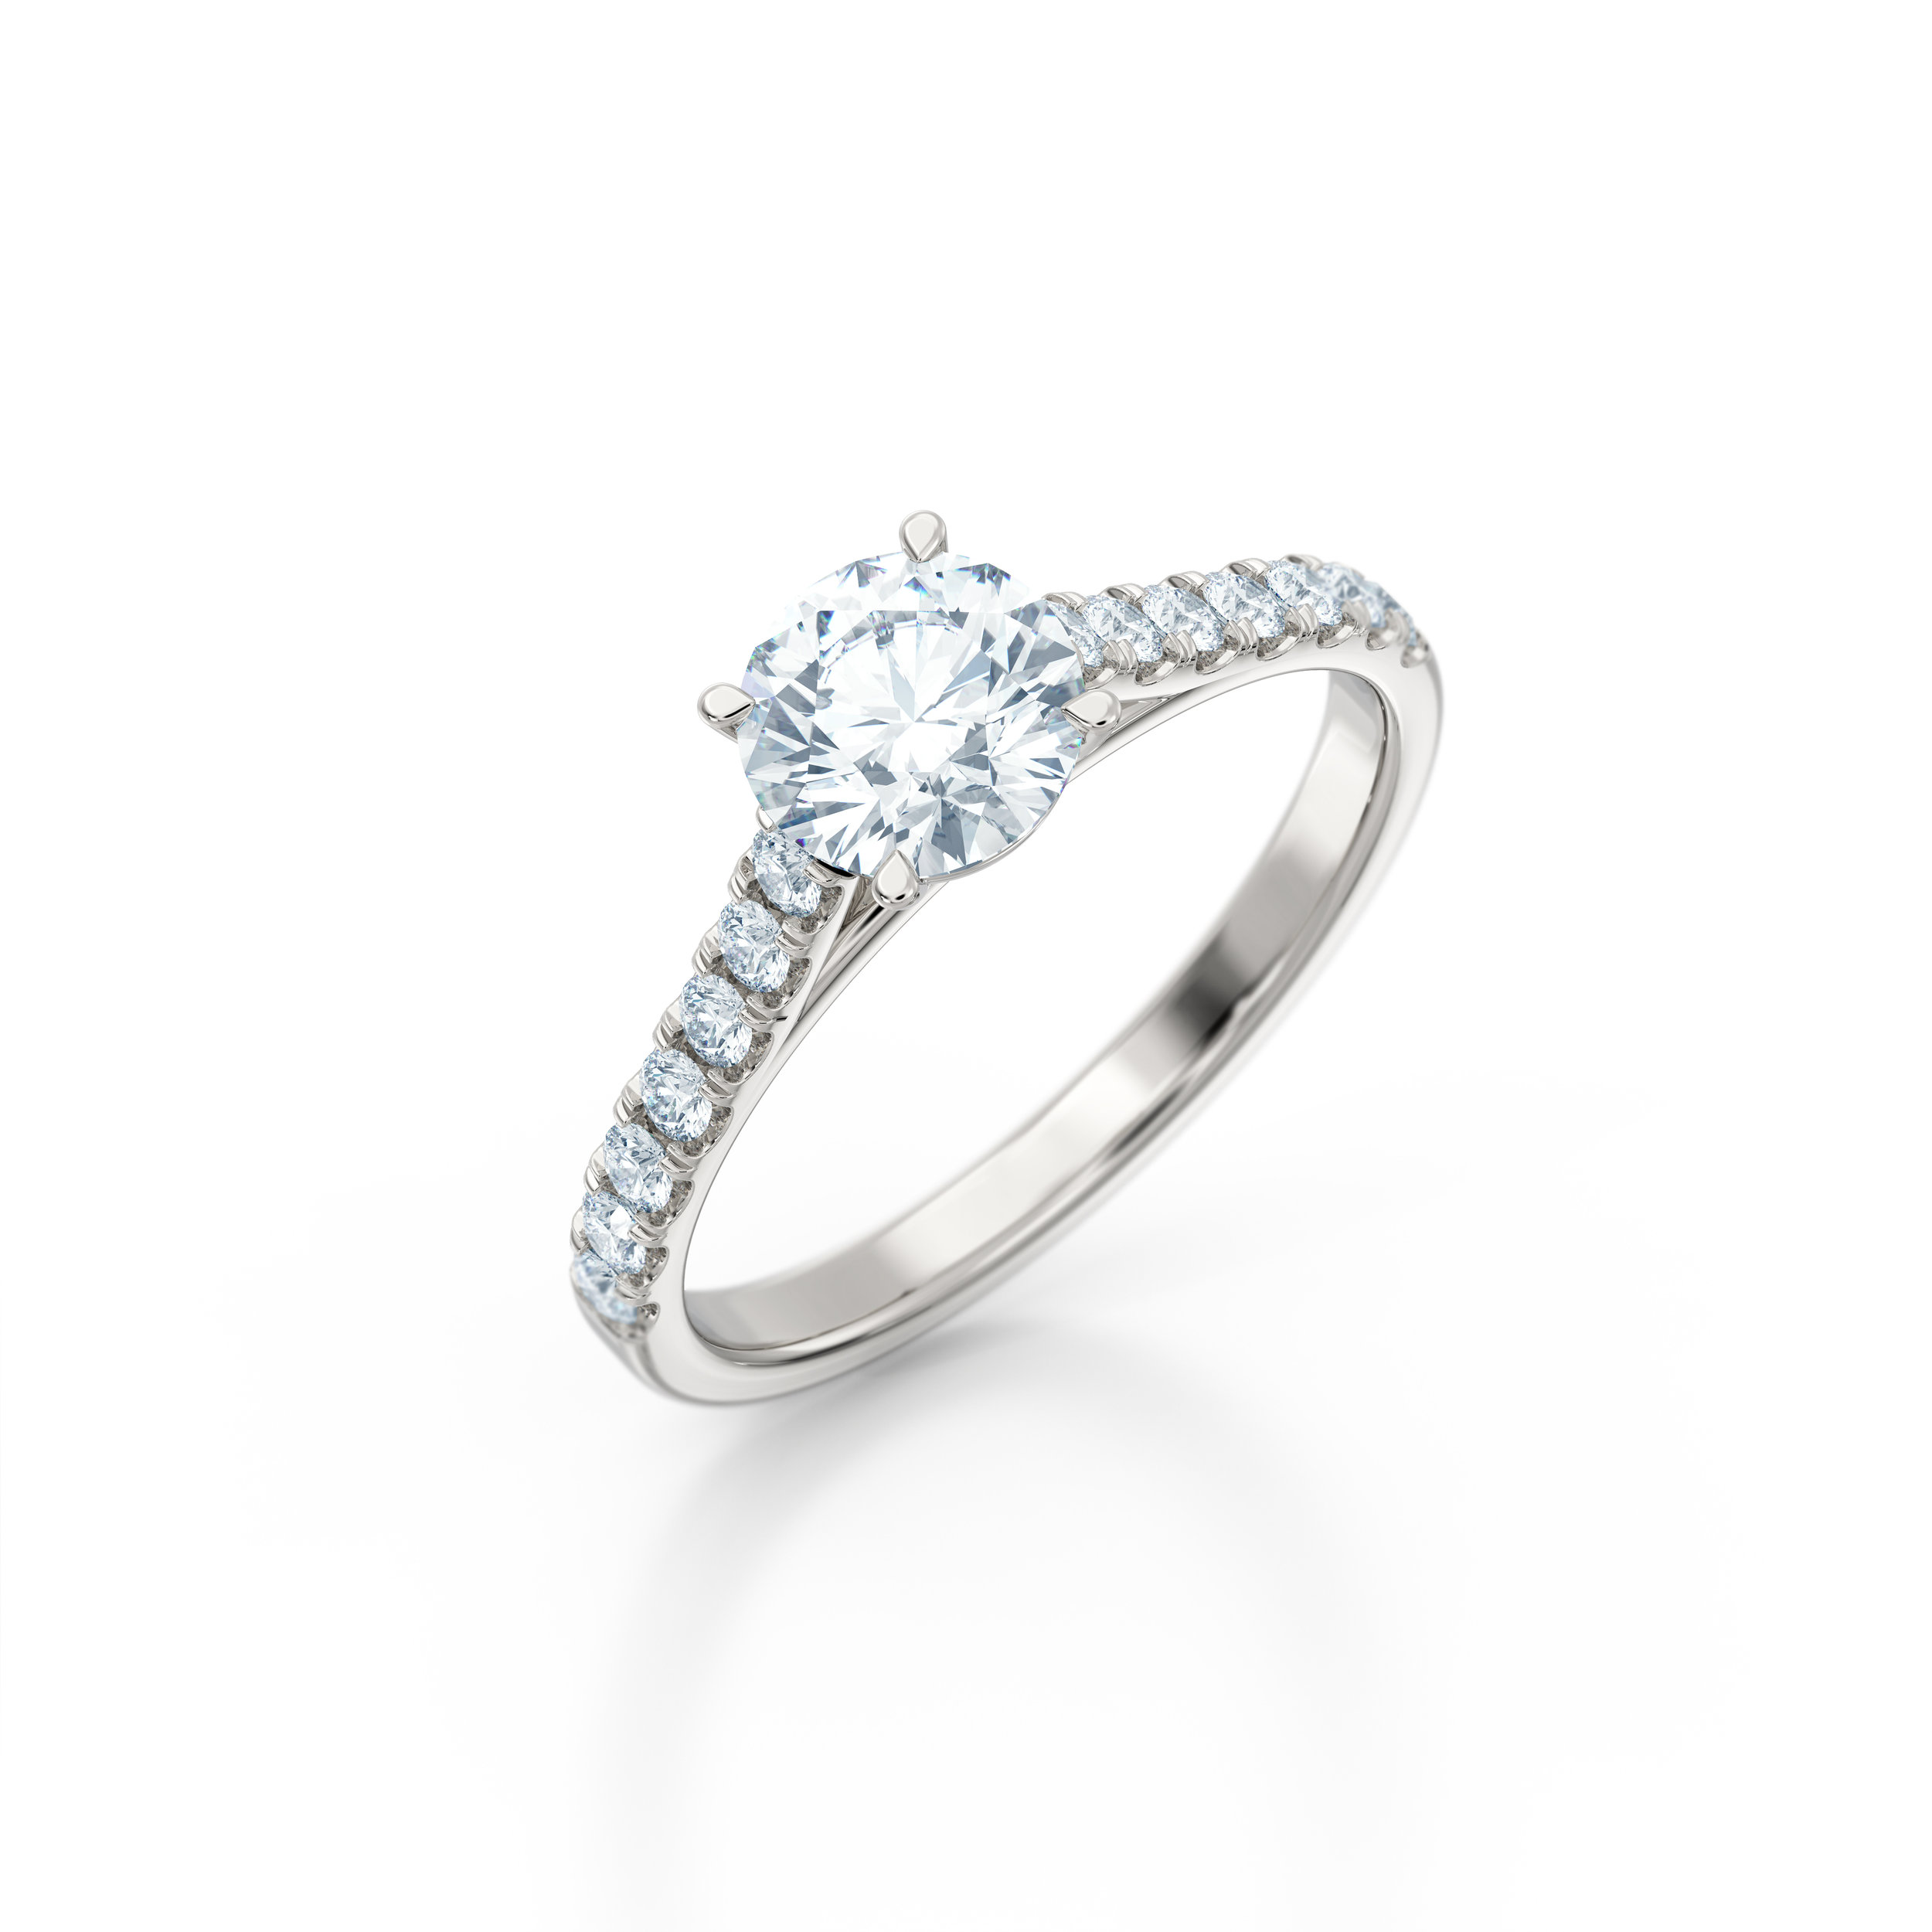 Brilliant cut diamond shoulder engagement ring | Hatton Garden